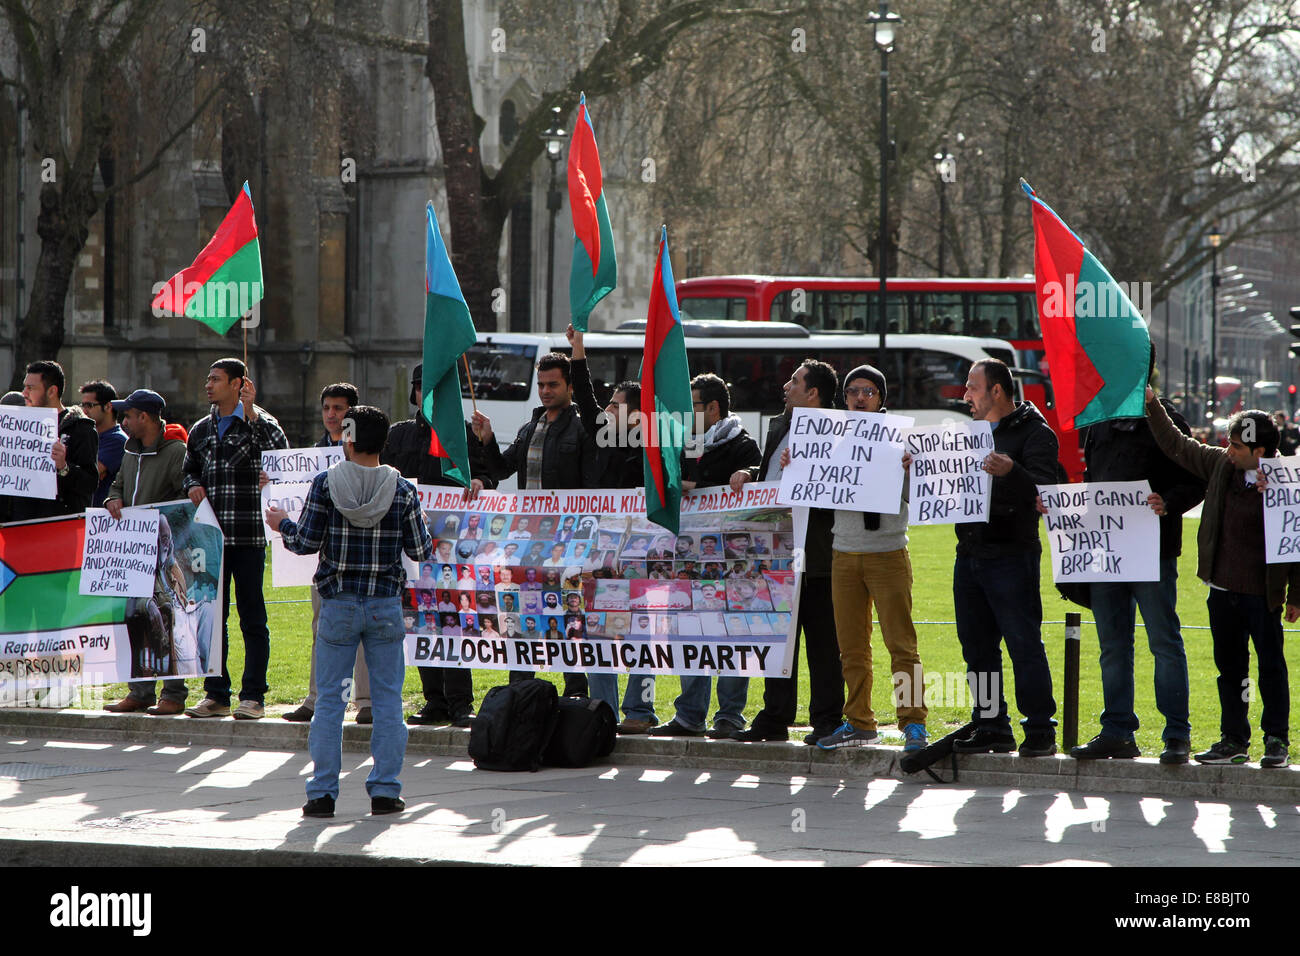 Manifestantes del Partido Republicano Baloch demostrar en la Plaza del Parlamento, frente al Palacio de Westminster en Londres Foto de stock